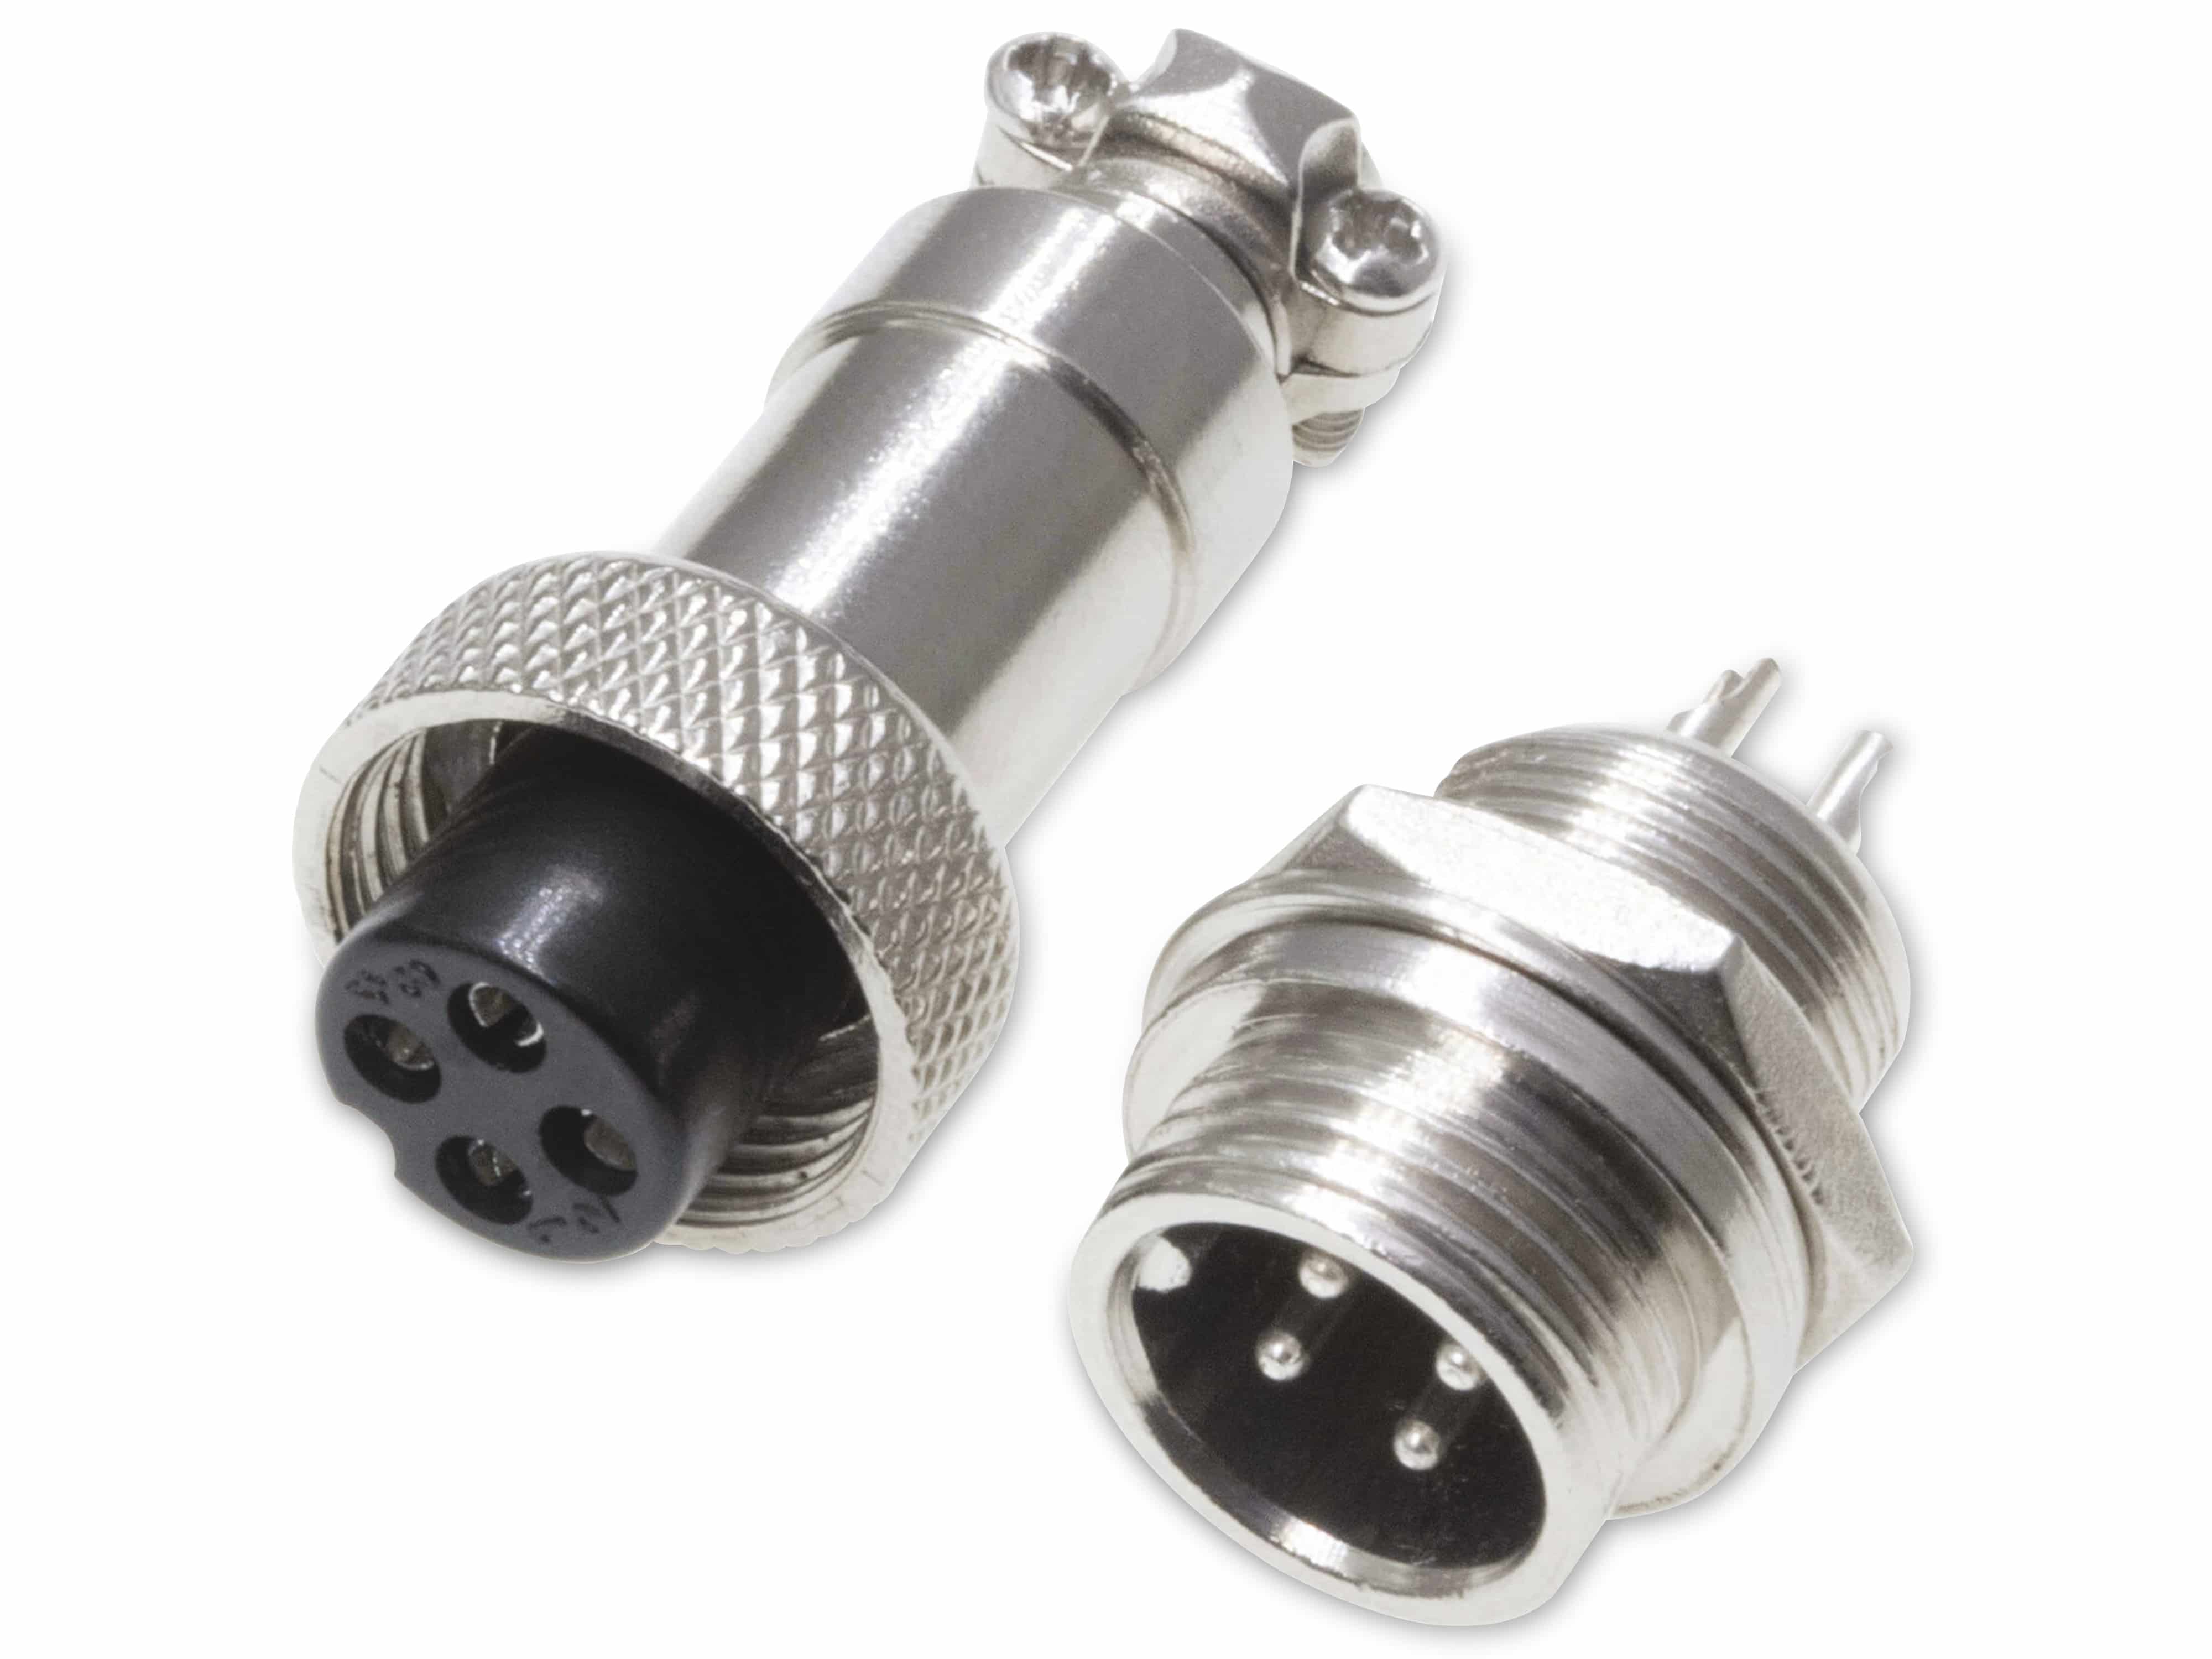 Rundsteckverbinder, 4-polig, 60V, 2A, Lötanschluss, IP55, wire to panel, 1 Stecker + 1 Buchse